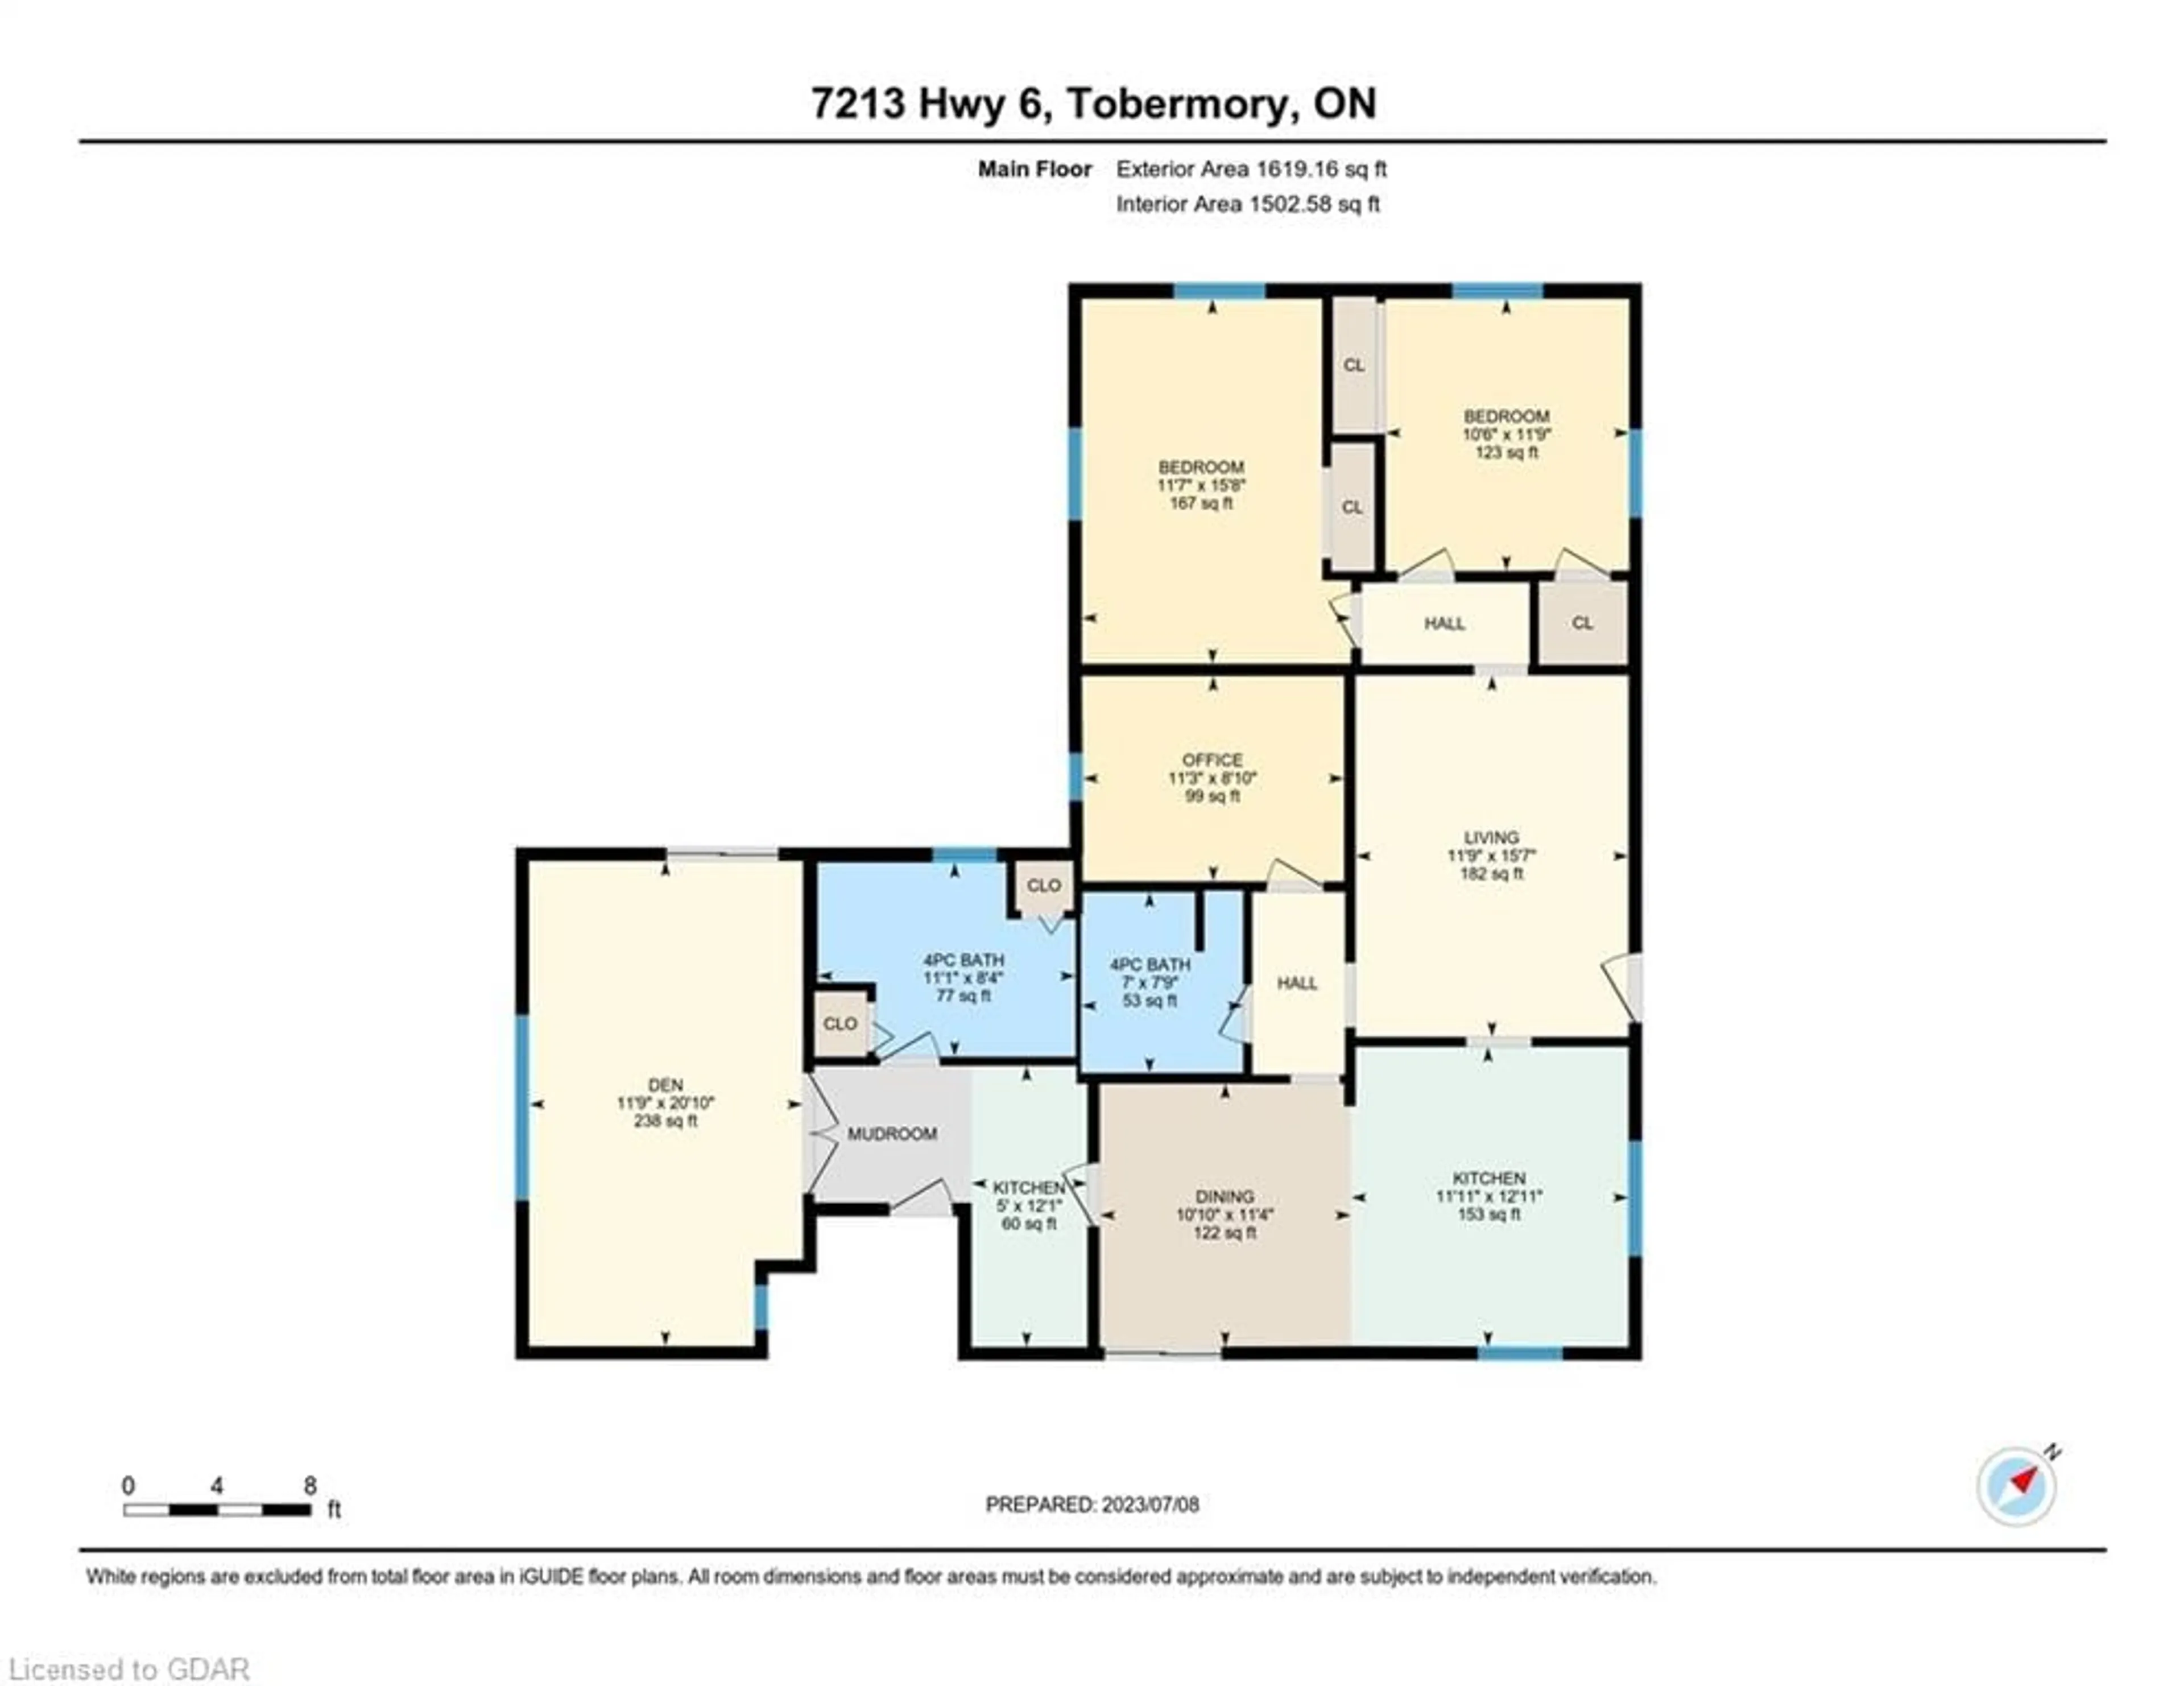 Floor plan for 7213 6 Hwy, Tobermory Ontario N0H 2R0